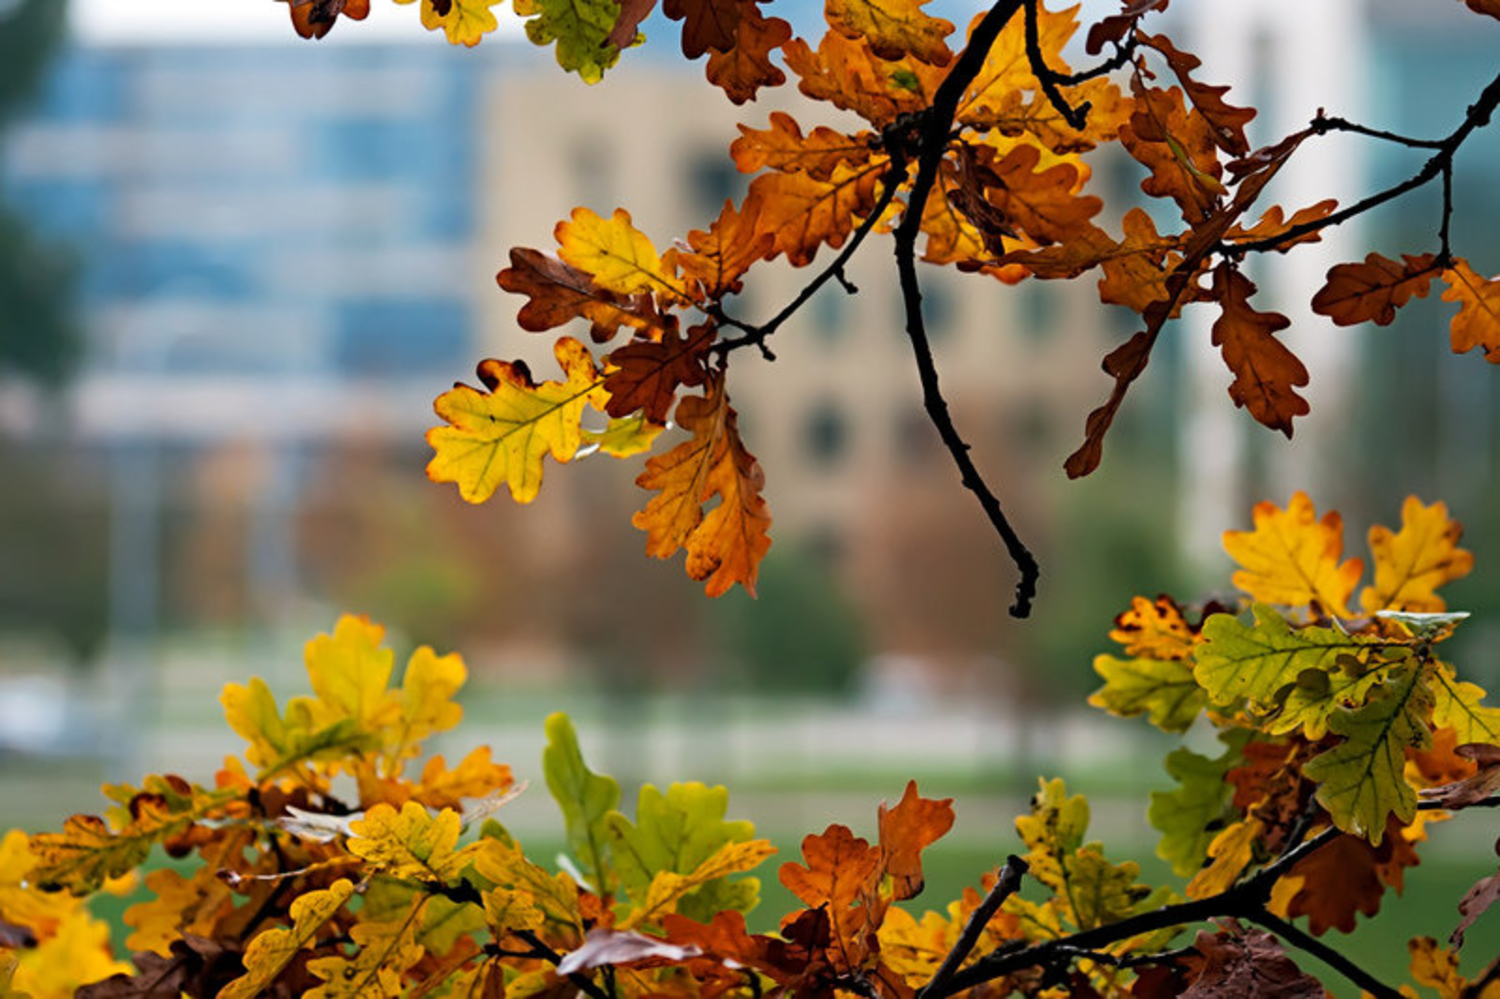 Листья желтые оригинал слушать. Листья жёлтые над городом кружатся. Осень верь. Осенние листья над городом кружатся. Листья желтые над городом кружатся гиф.